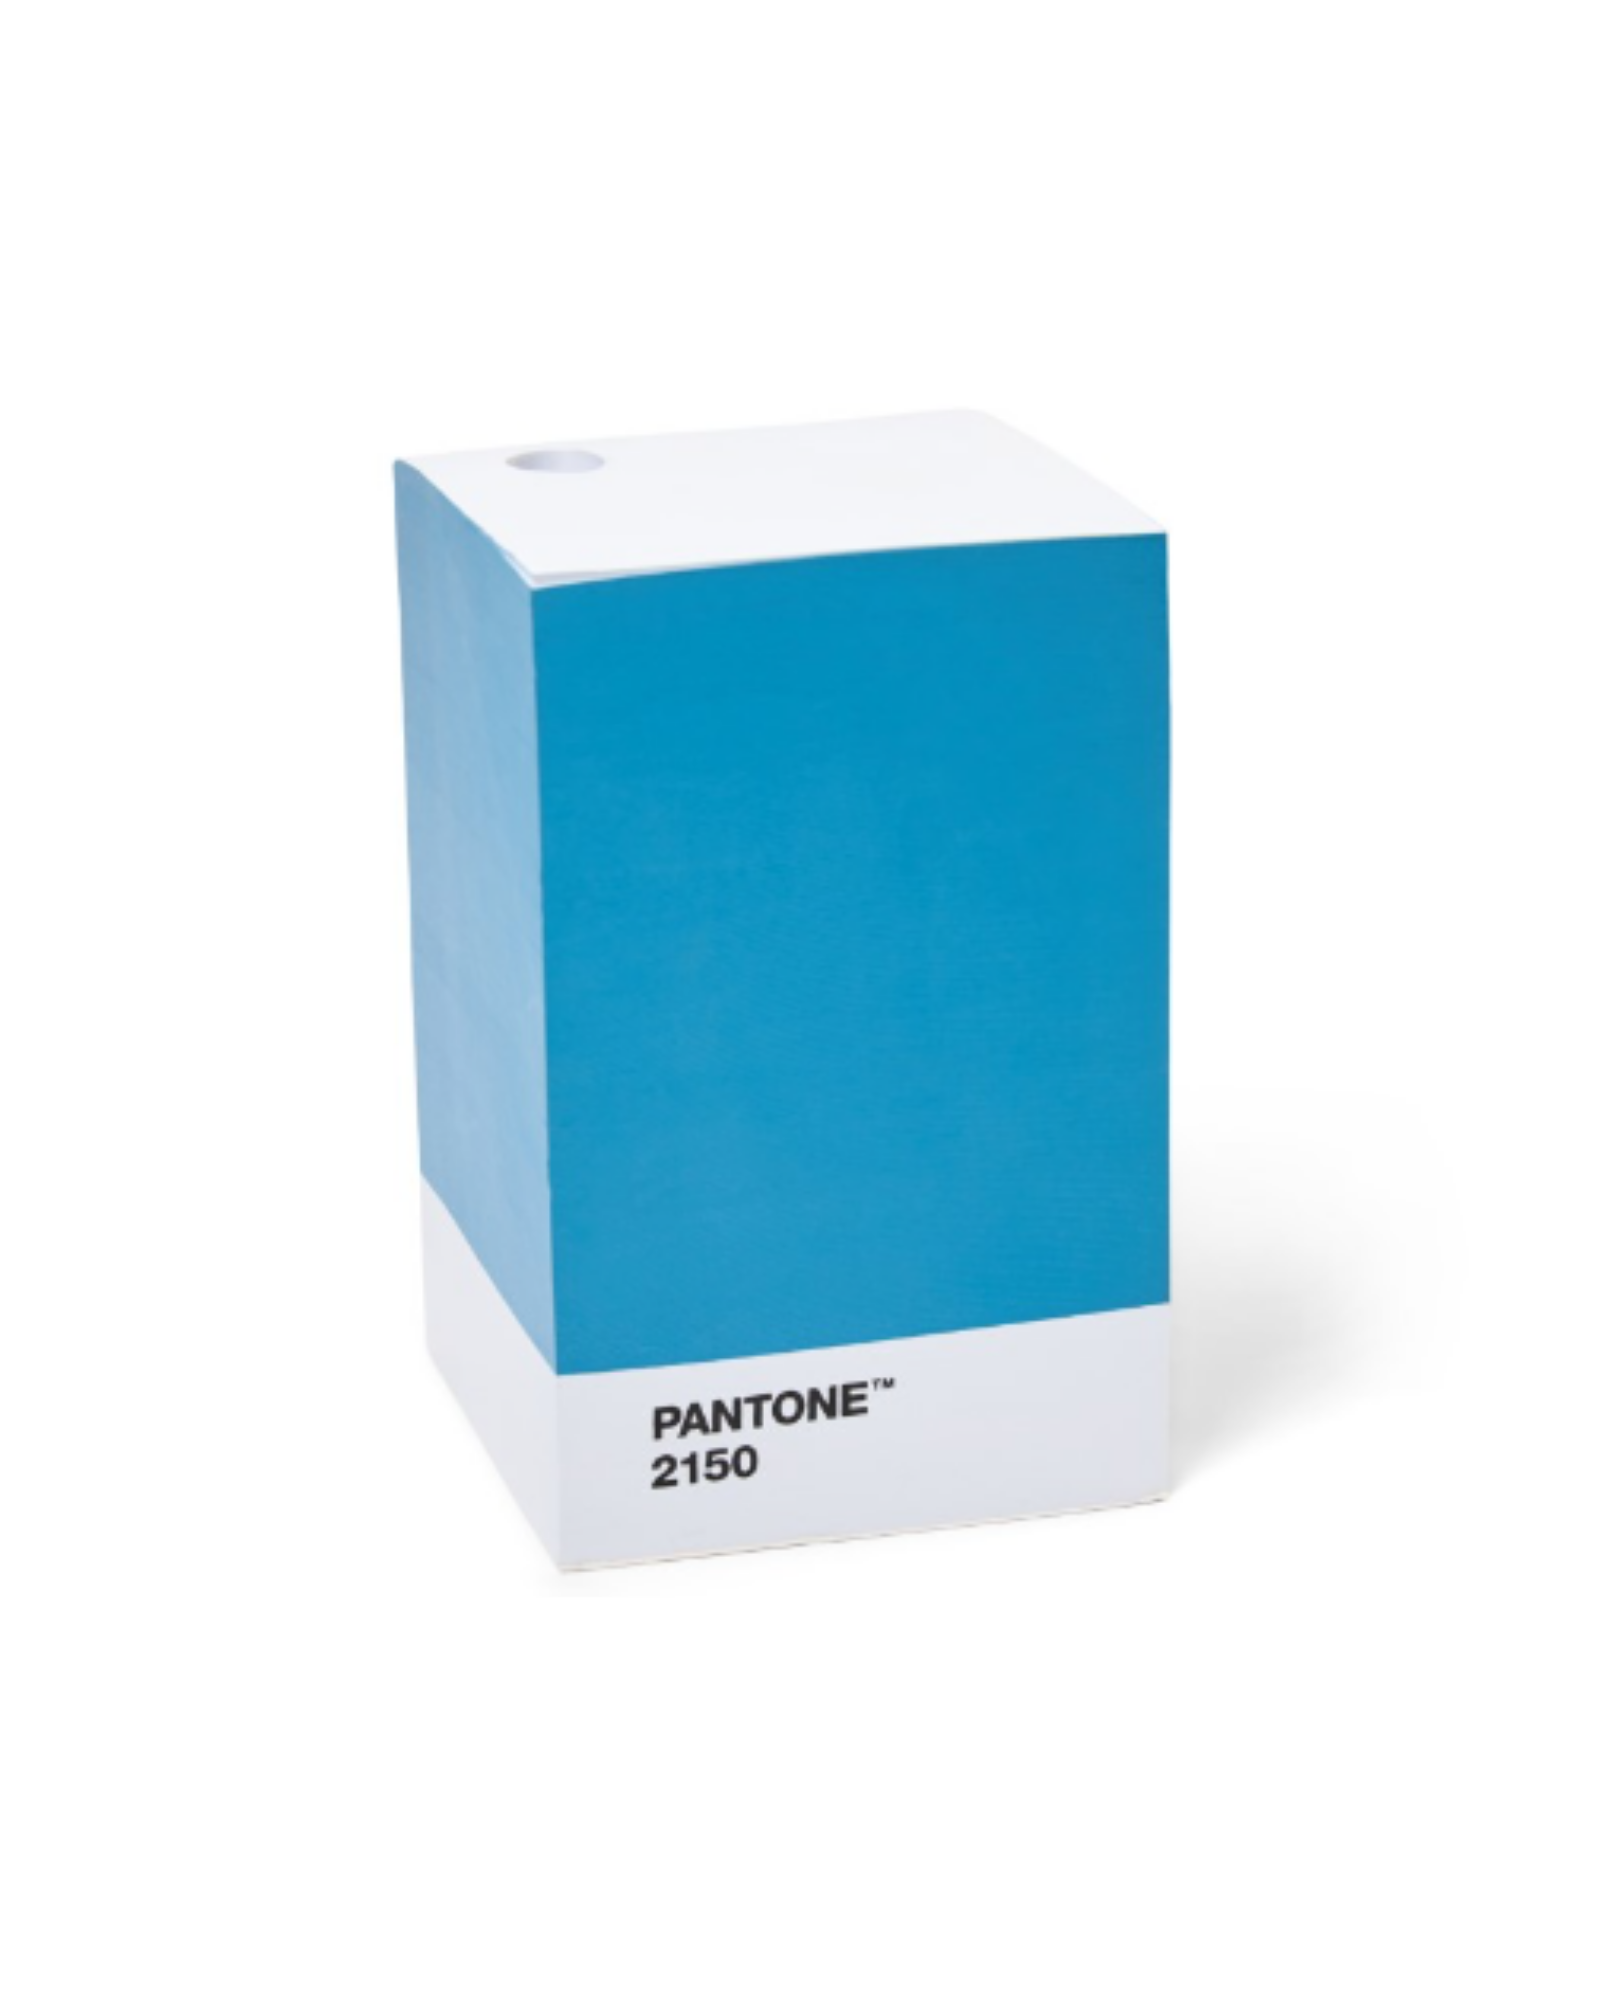  PANTONE NEW STICKY NOTEPAD - BLUE 